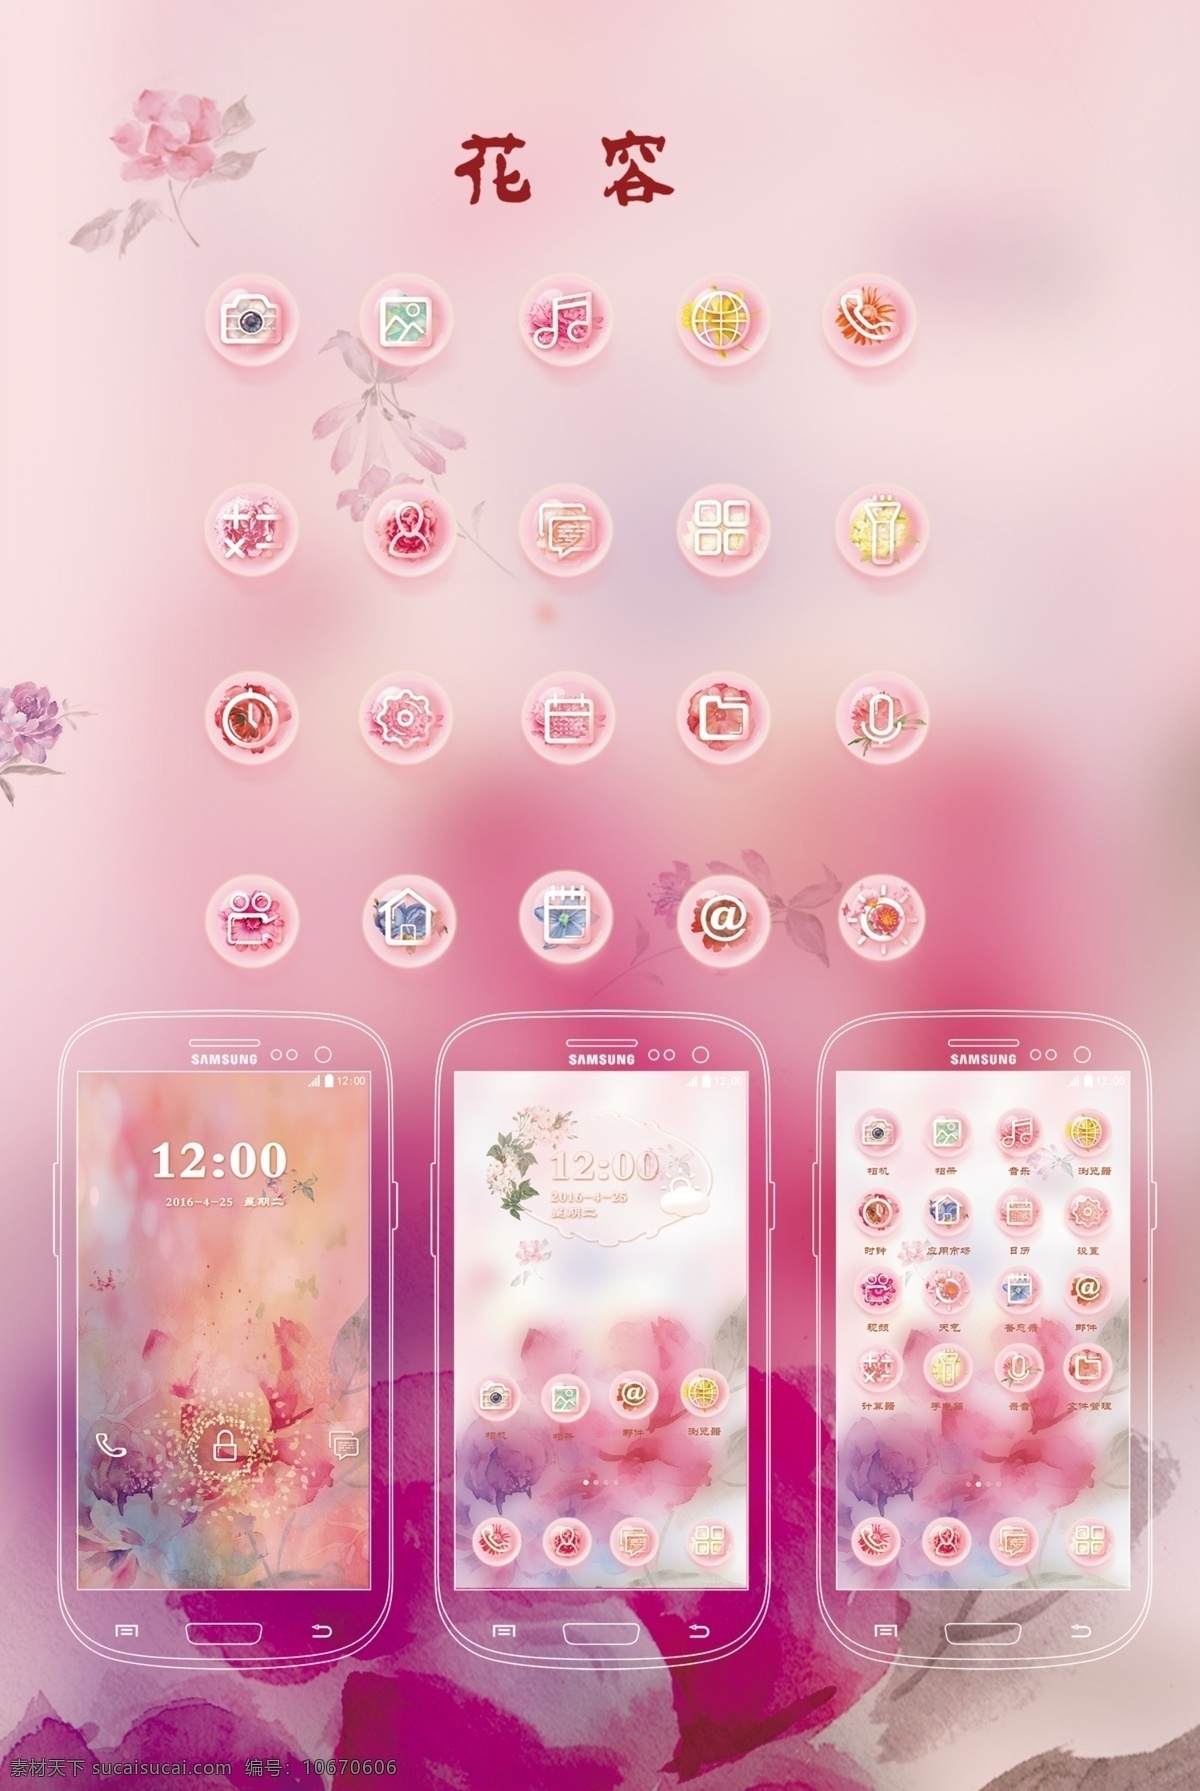 组 关于 花朵 元素 手机 主题 粉色图标设计 女生手机主题 手机图标设计 卡通 花朵元素设计 手机界面设计